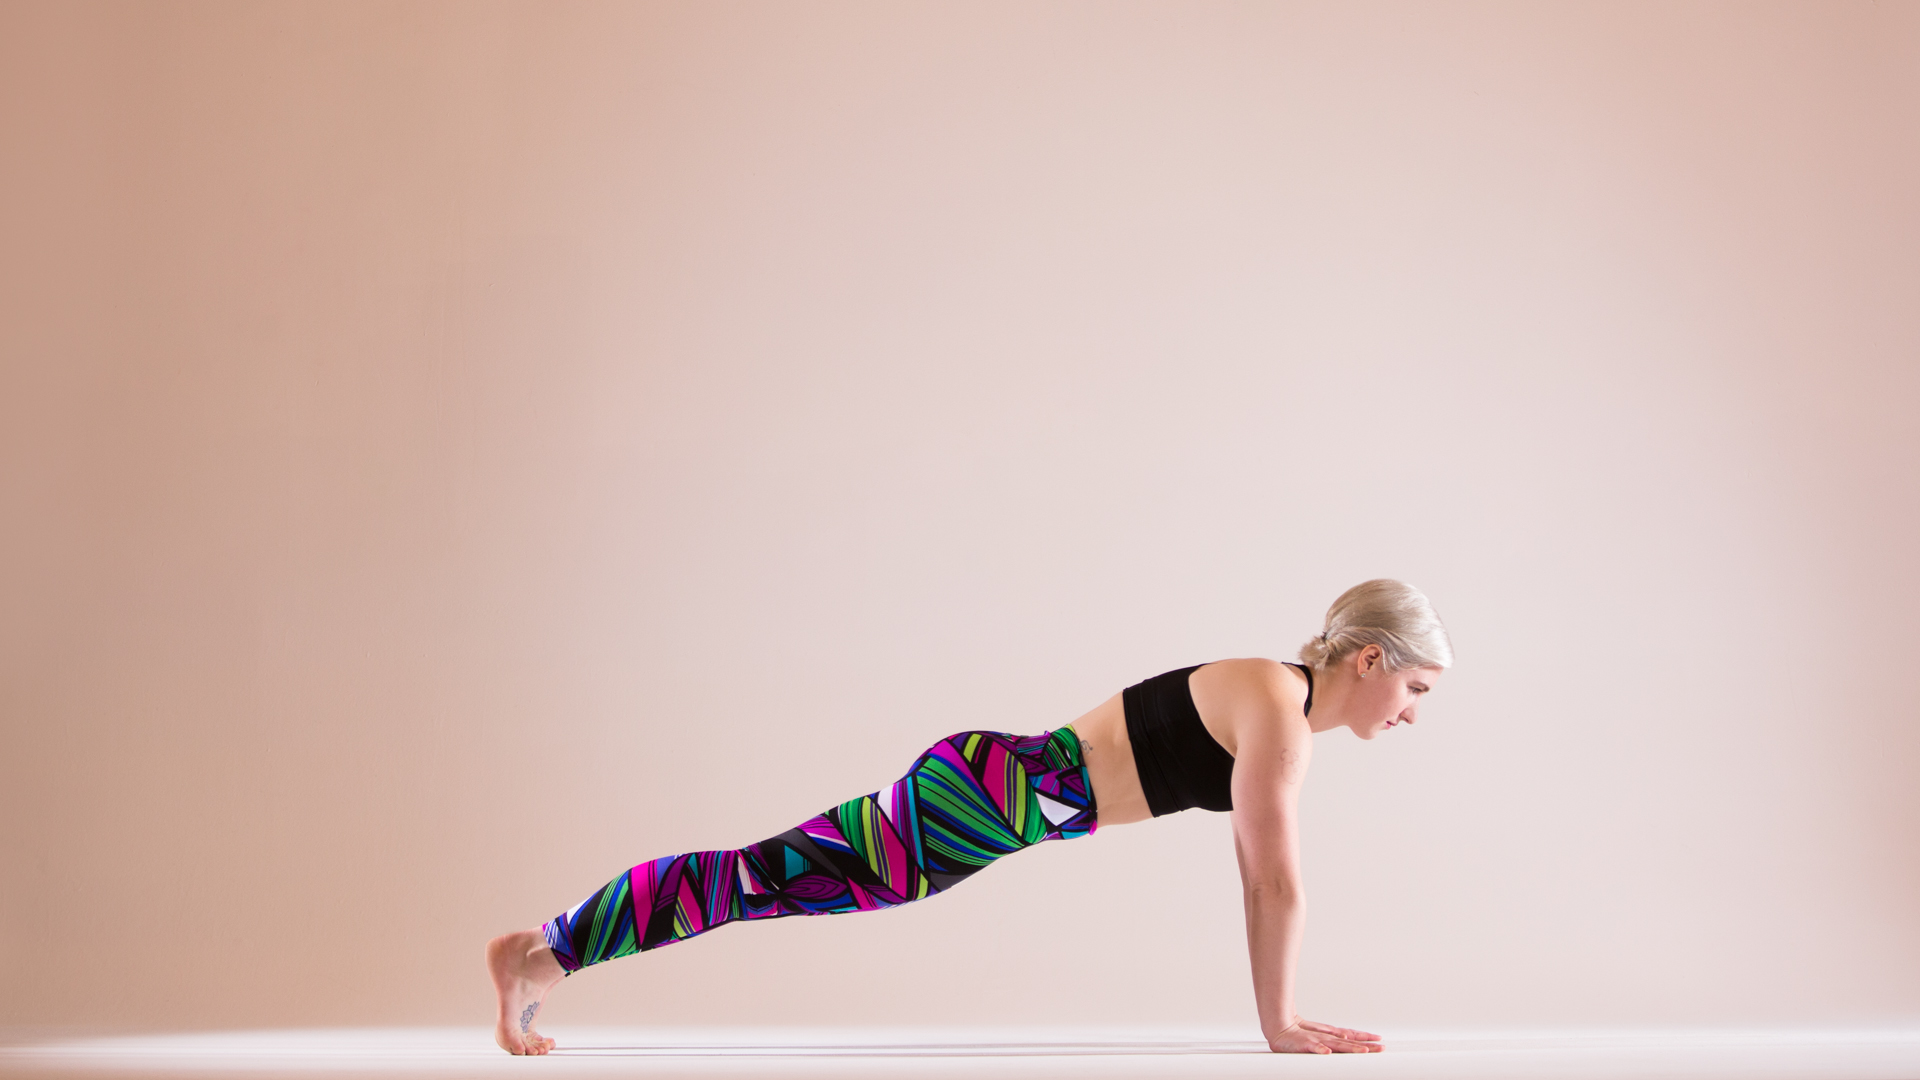 How To Do A Handstand For Beginners in 4 Easy Steps – Brett Larkin Yoga